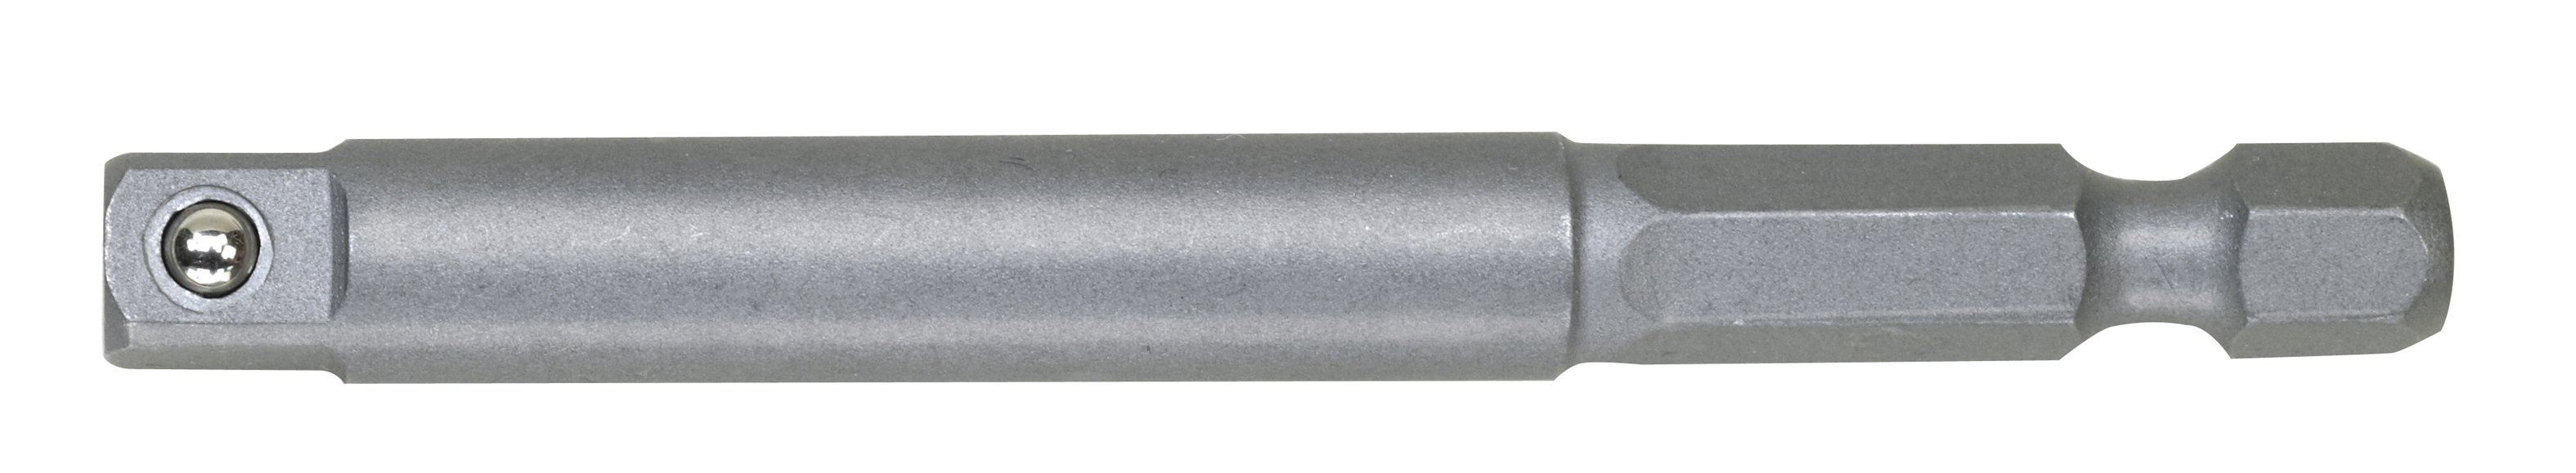 Adaptateur pour foreuse 1/4 pouces, 65 mm de long PROXXON